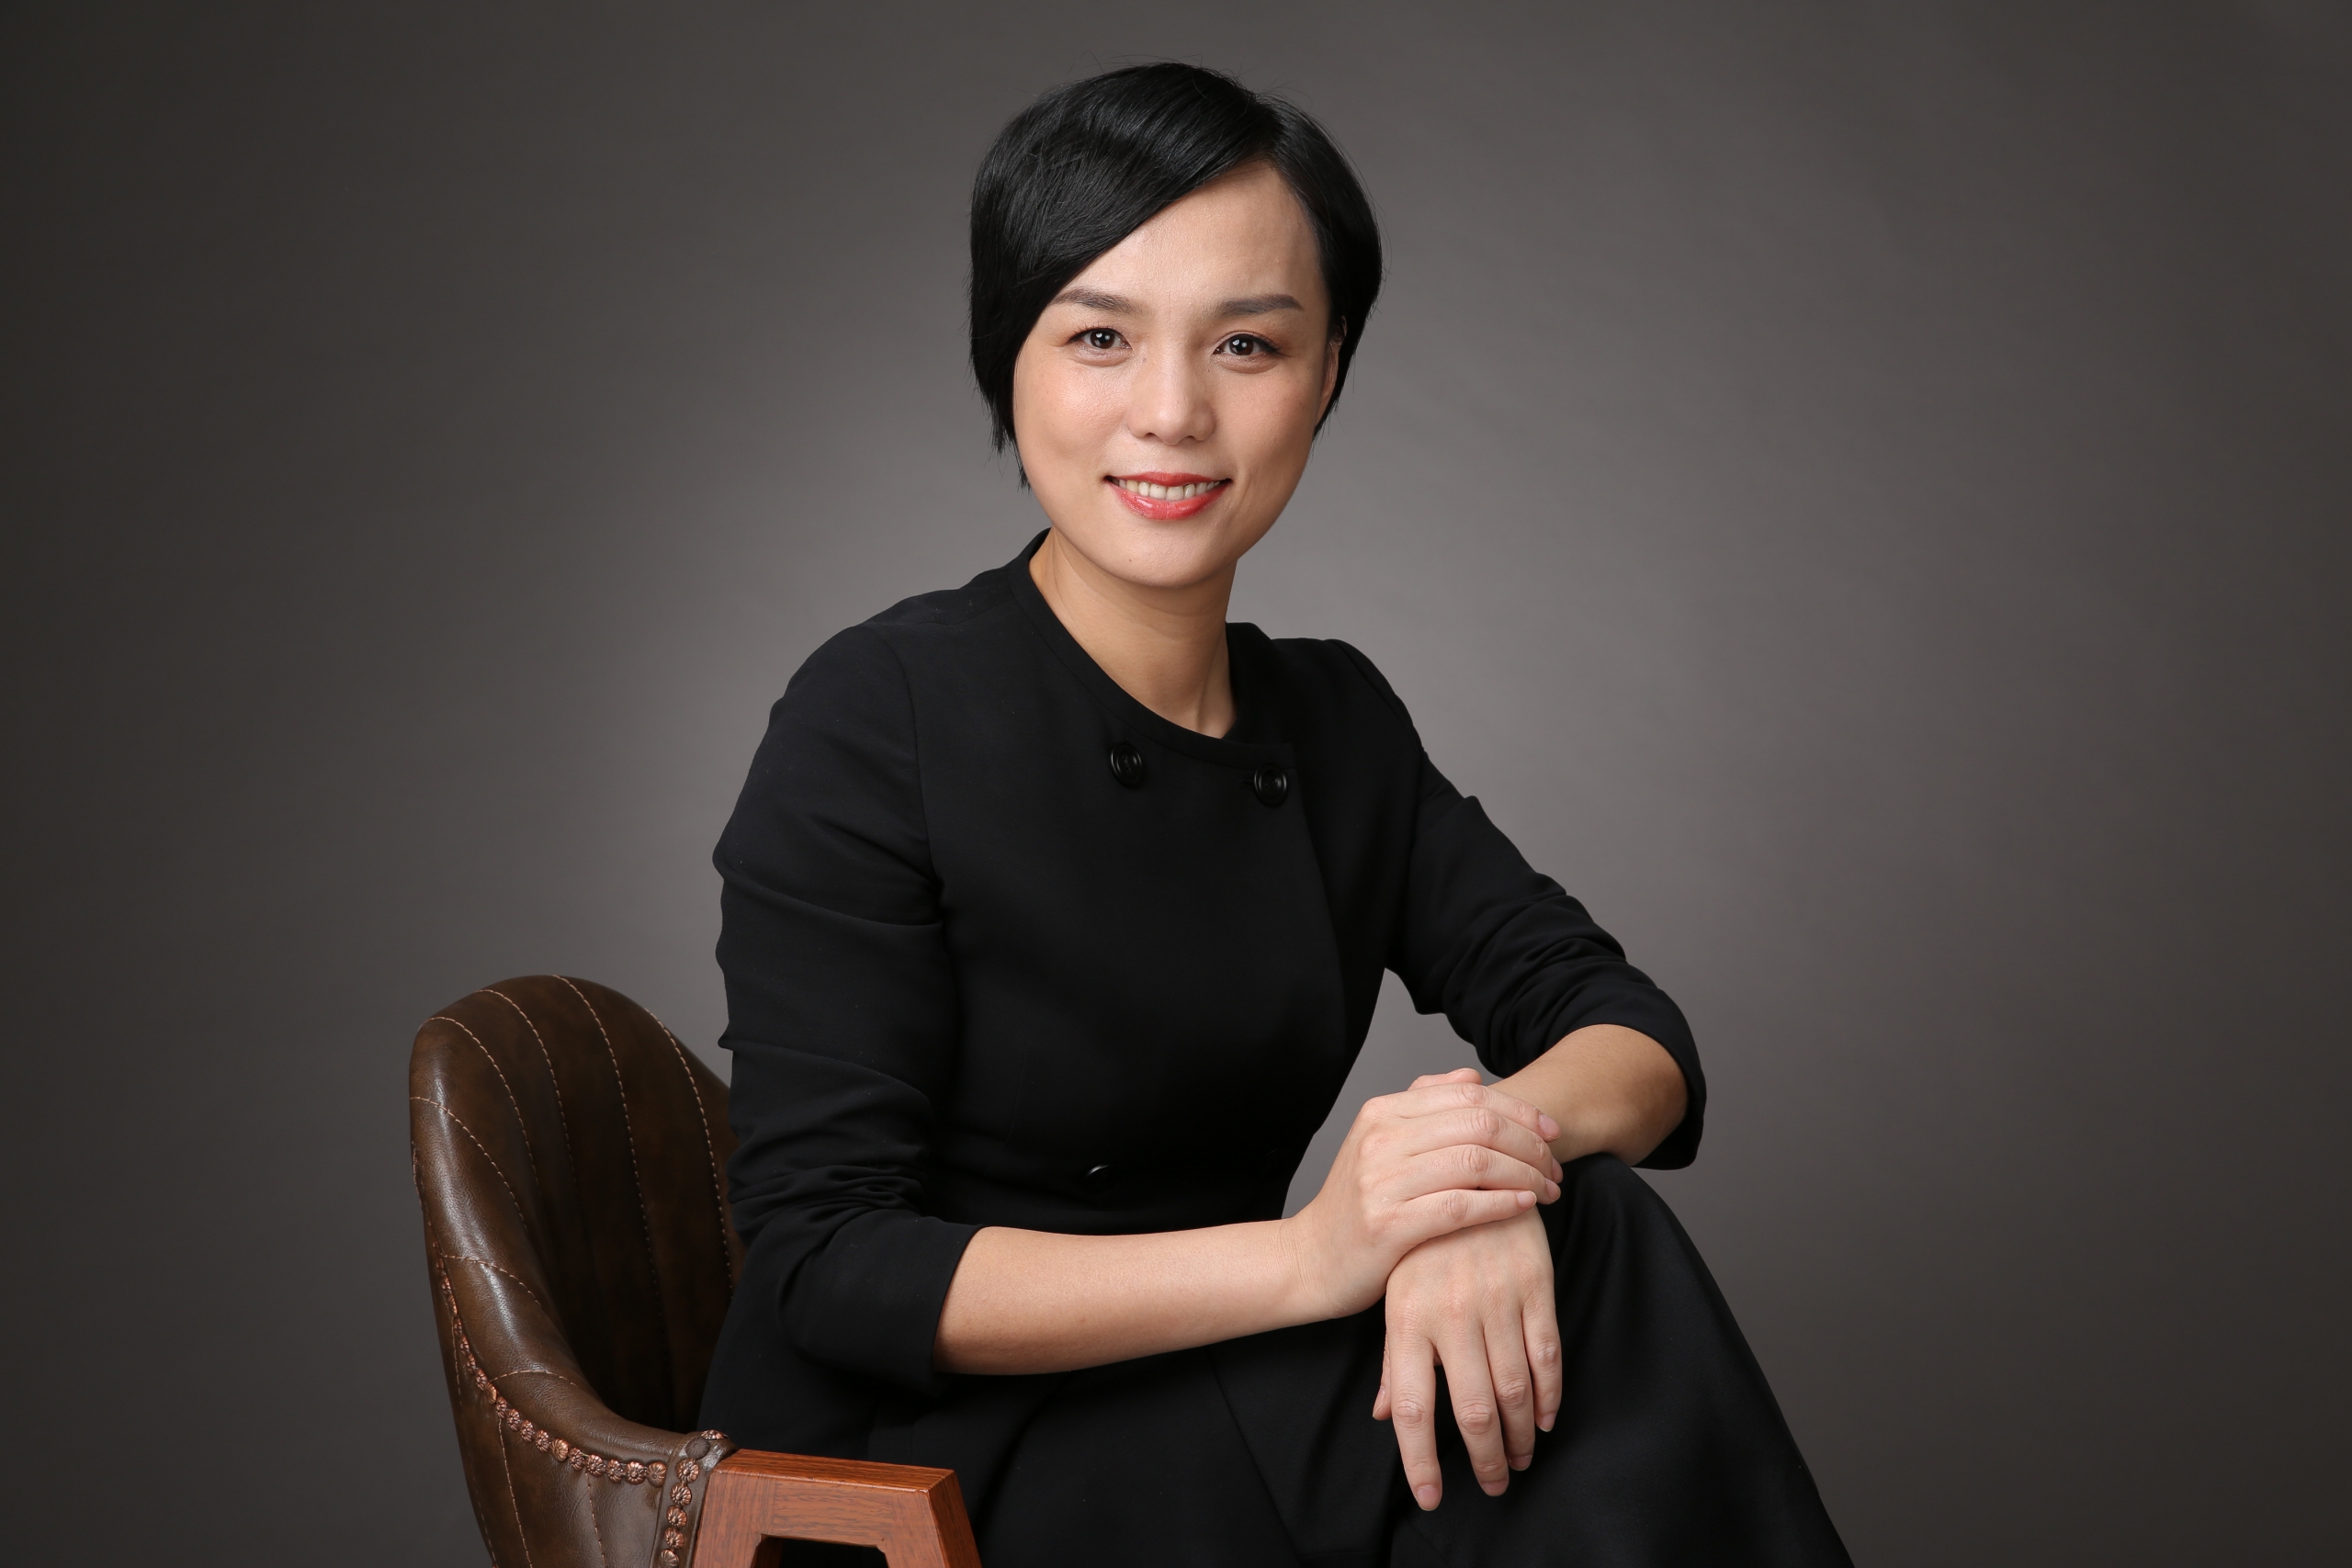 Ms Zhang Yongmei